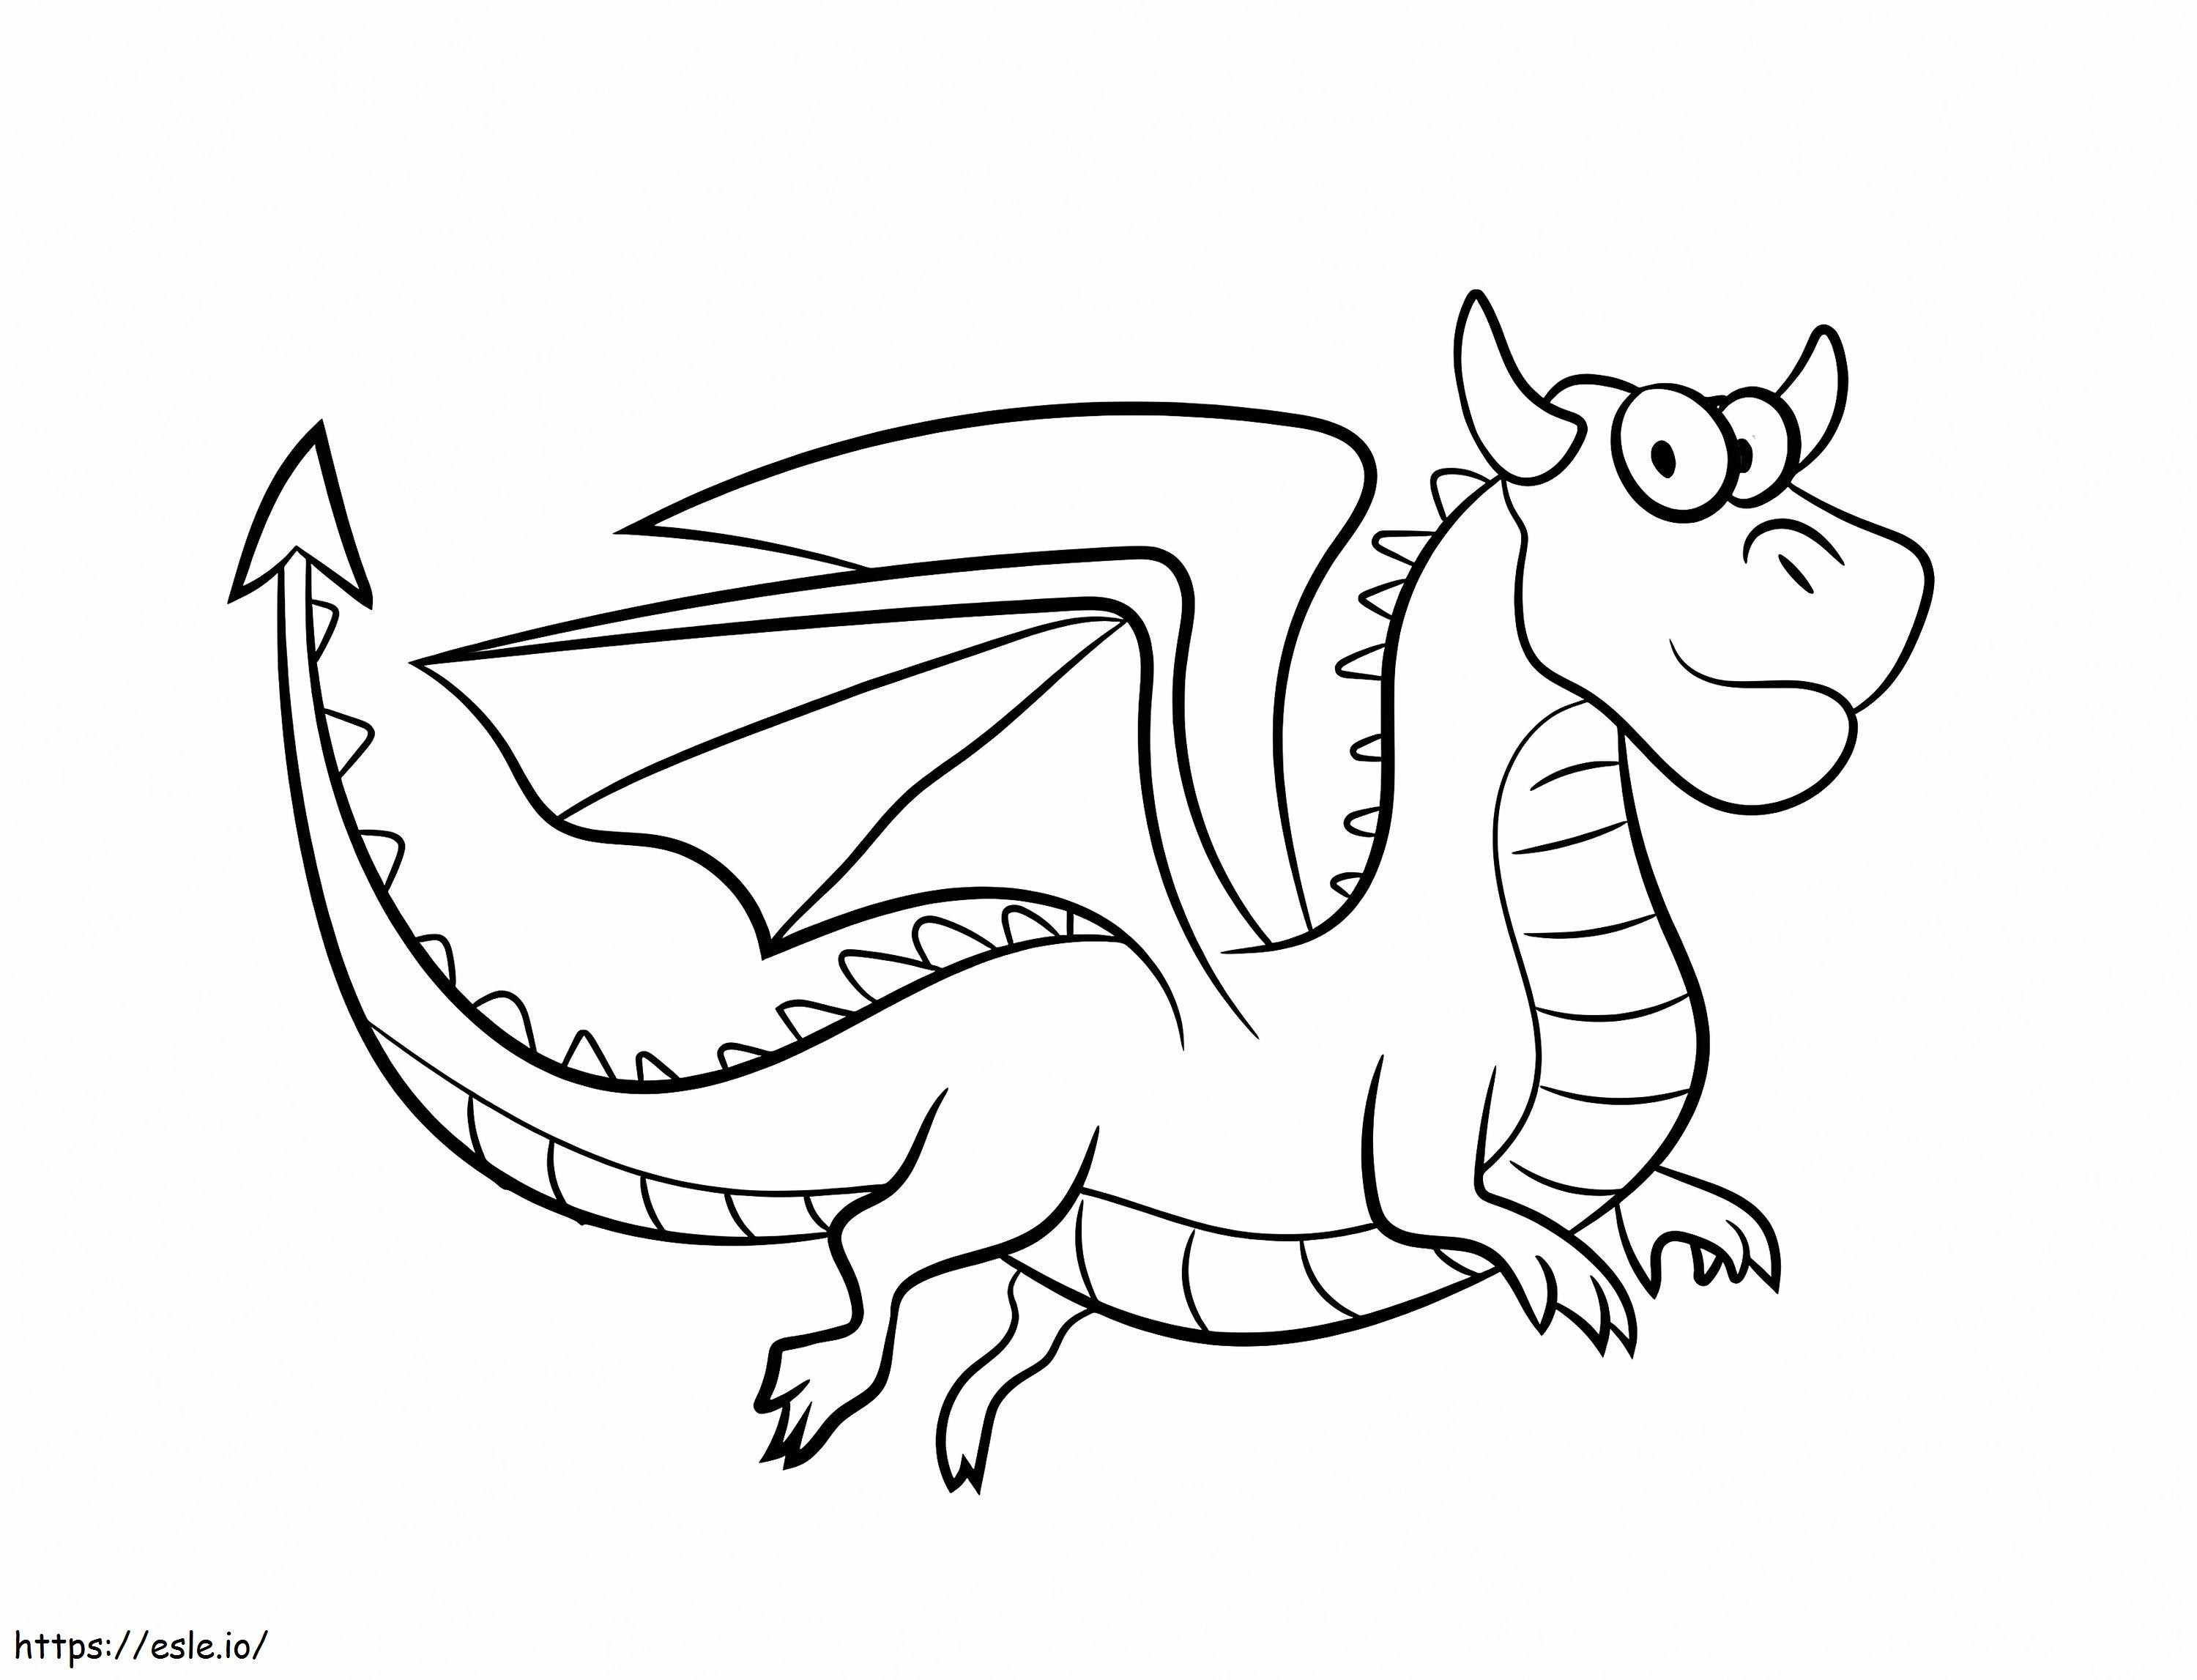 Cartoon Dragon coloring page